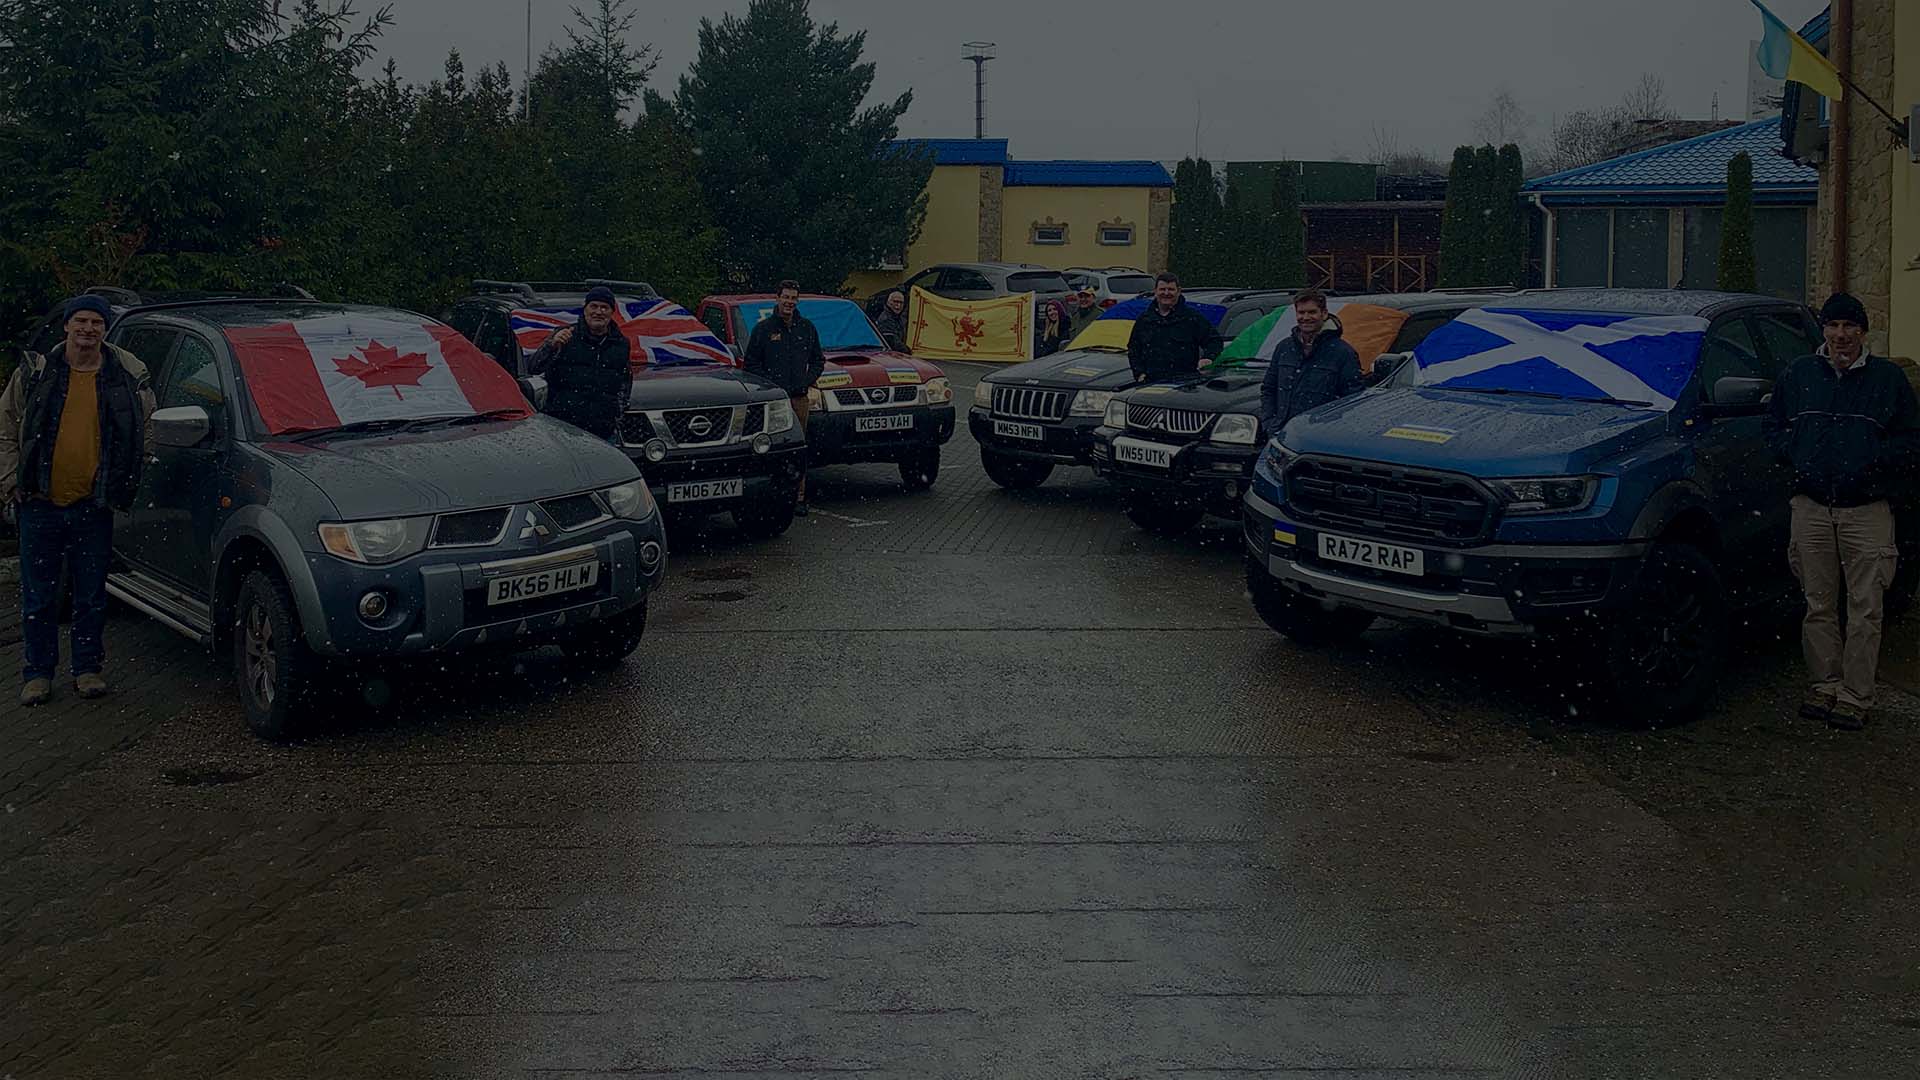 Et bilde på en prangende dag med frivillige fra forskjellige europeiske land og de donerte bilene.